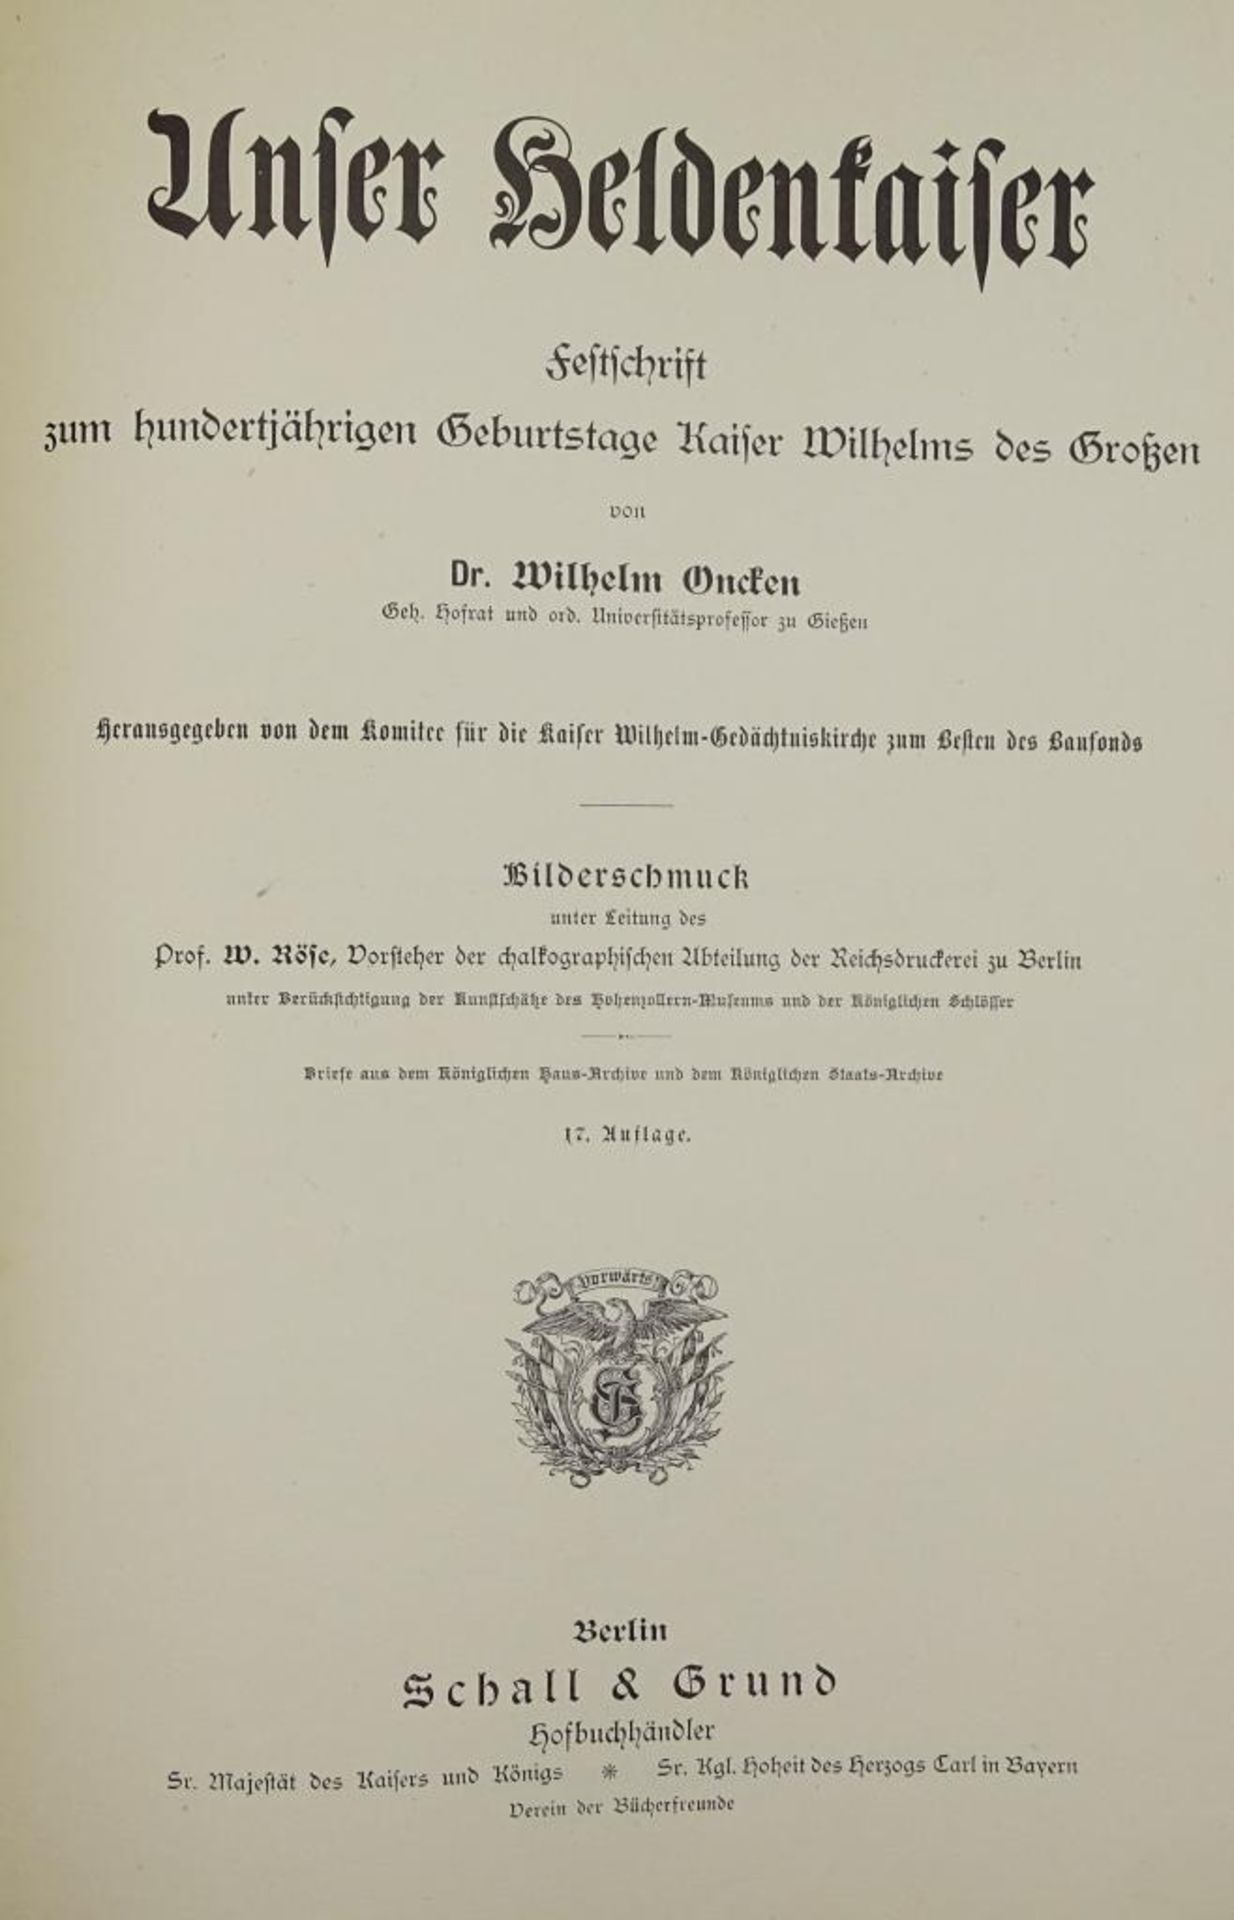 Unser Heldenkaiser,Festschrift zum 100 jährigen Geburtstag Kaiser Wilhelms des Großen,reich - Bild 3 aus 9